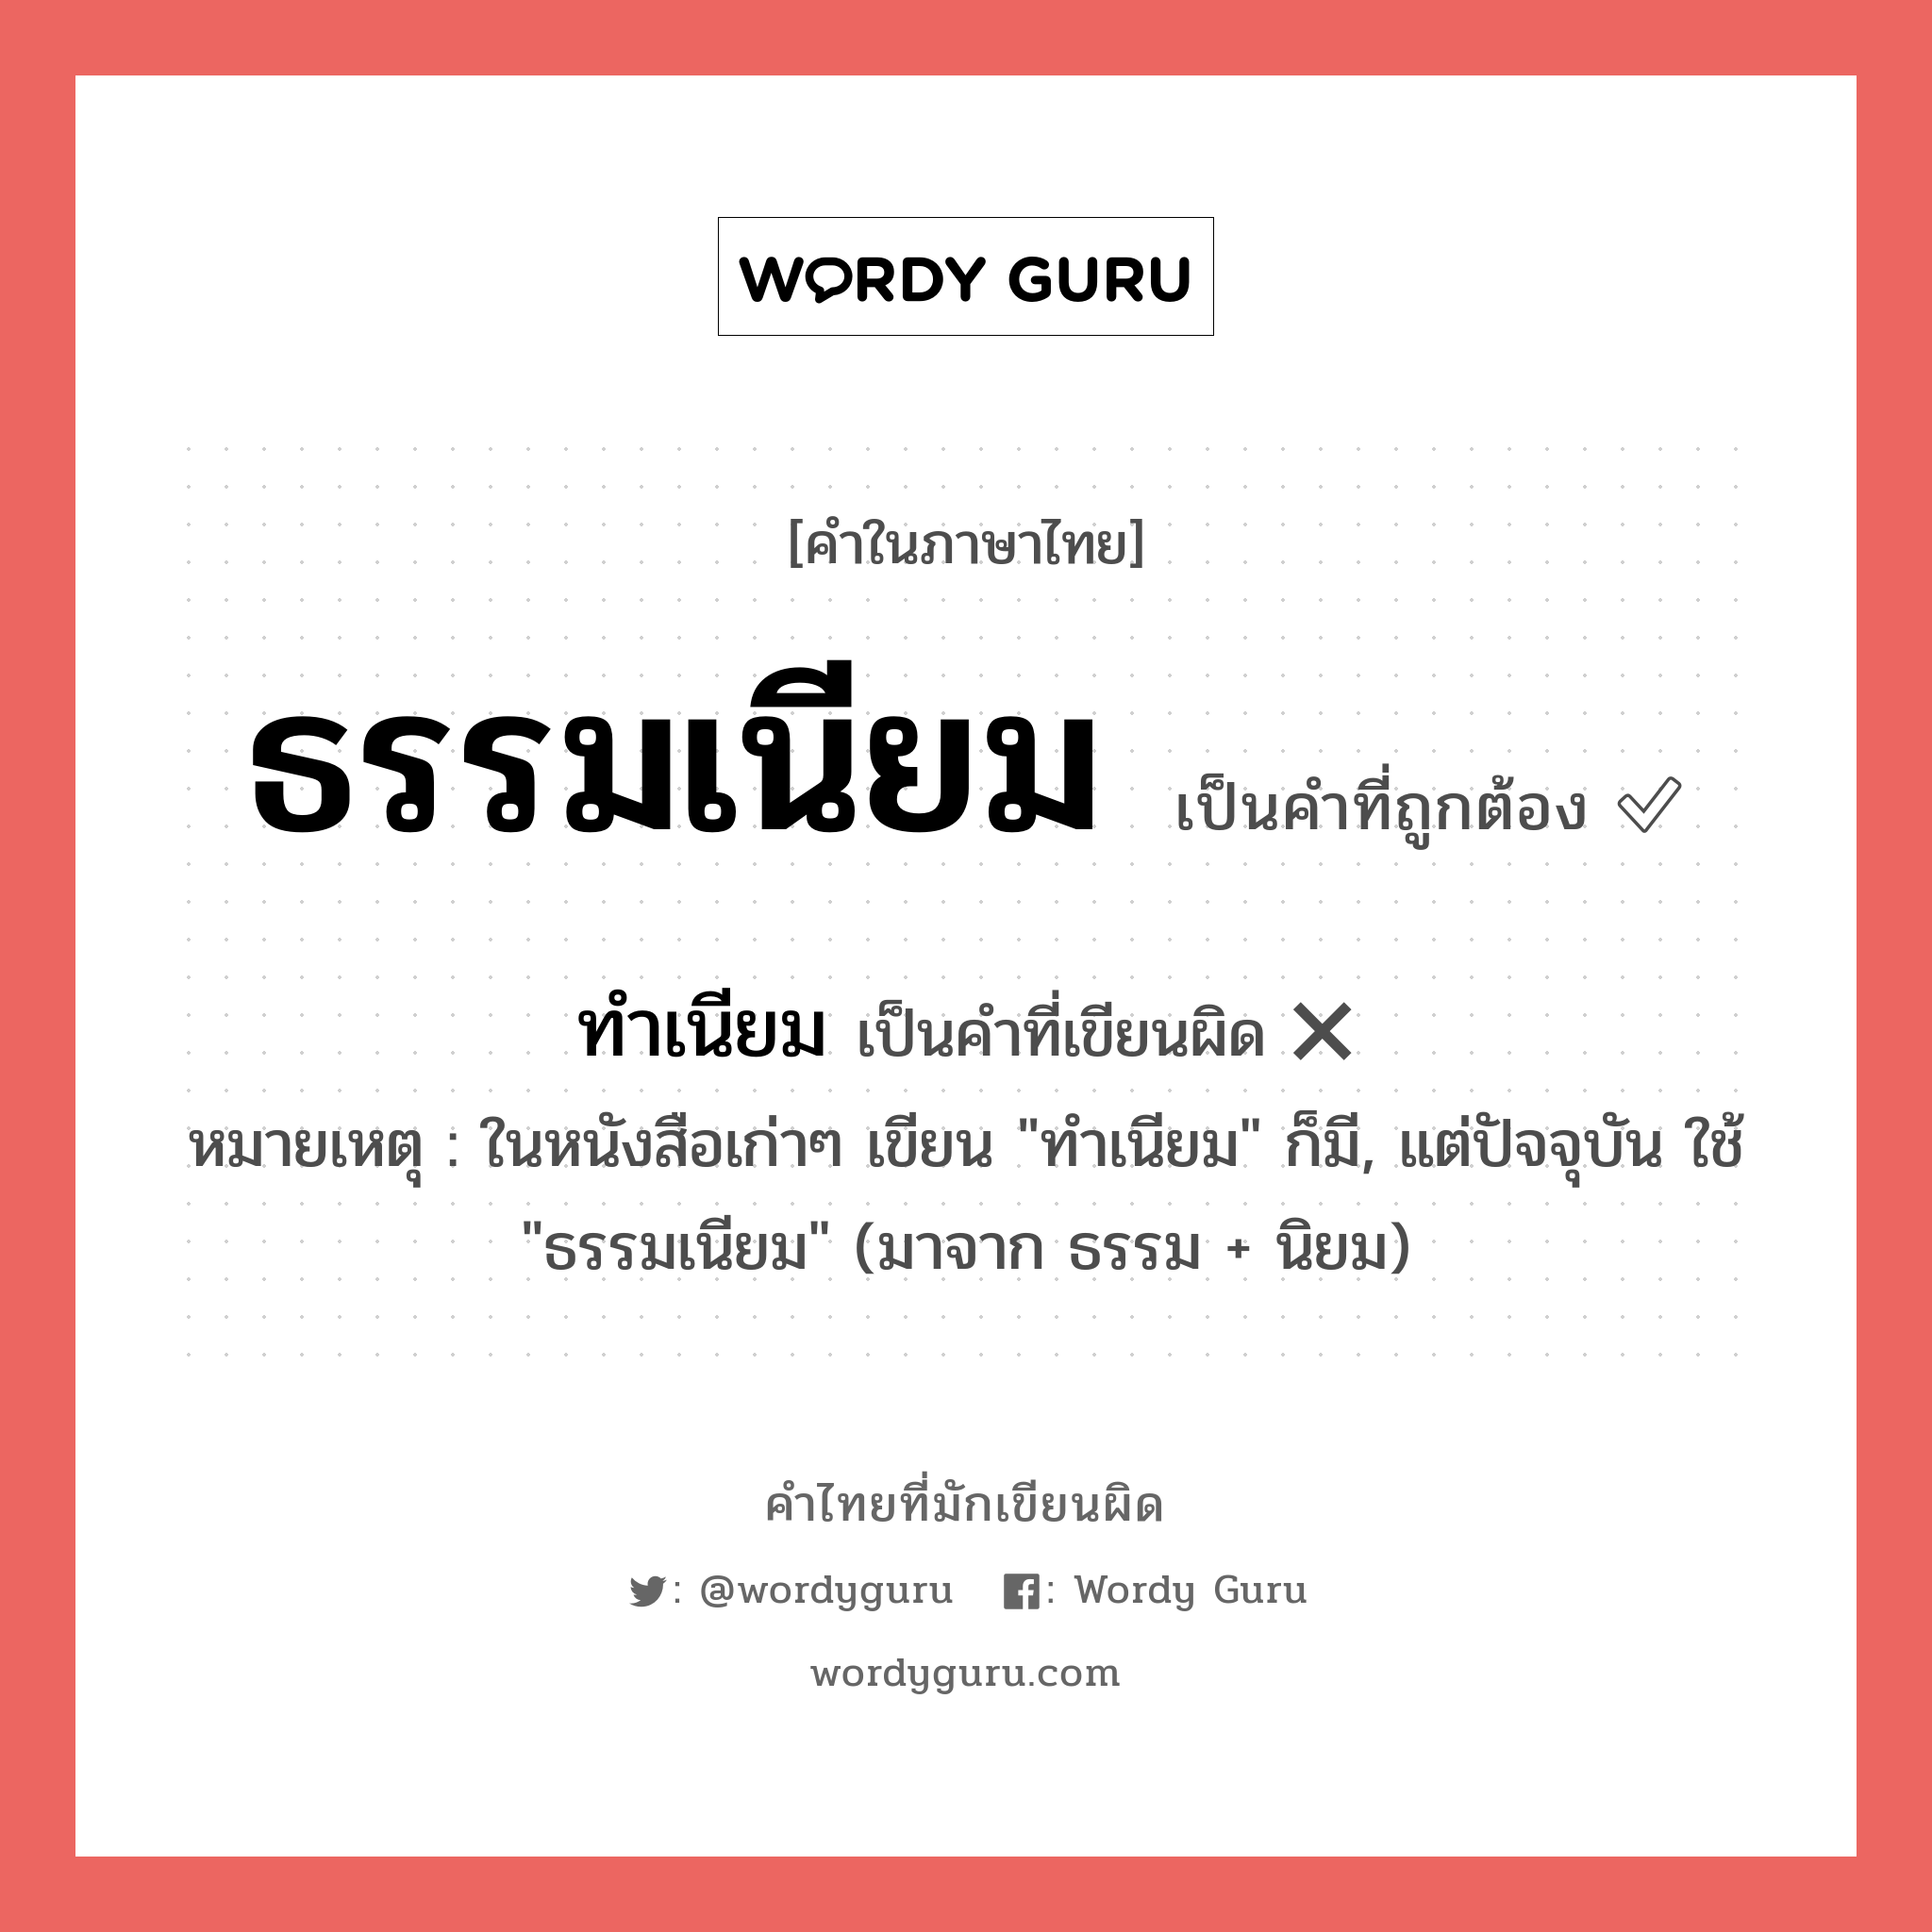 ธรรมเนียม หรือ ทำเนียม คำไหนเขียนถูก?, คำในภาษาไทยที่มักเขียนผิด ธรรมเนียม คำที่ผิด ❌ ทำเนียม หมายเหตุ ในหนังสือเก่าๆ เขียน "ทำเนียม" ก็มี, แต่ปัจจุบัน ใช้ "ธรรมเนียม" (มาจาก ธรรม + นิยม)